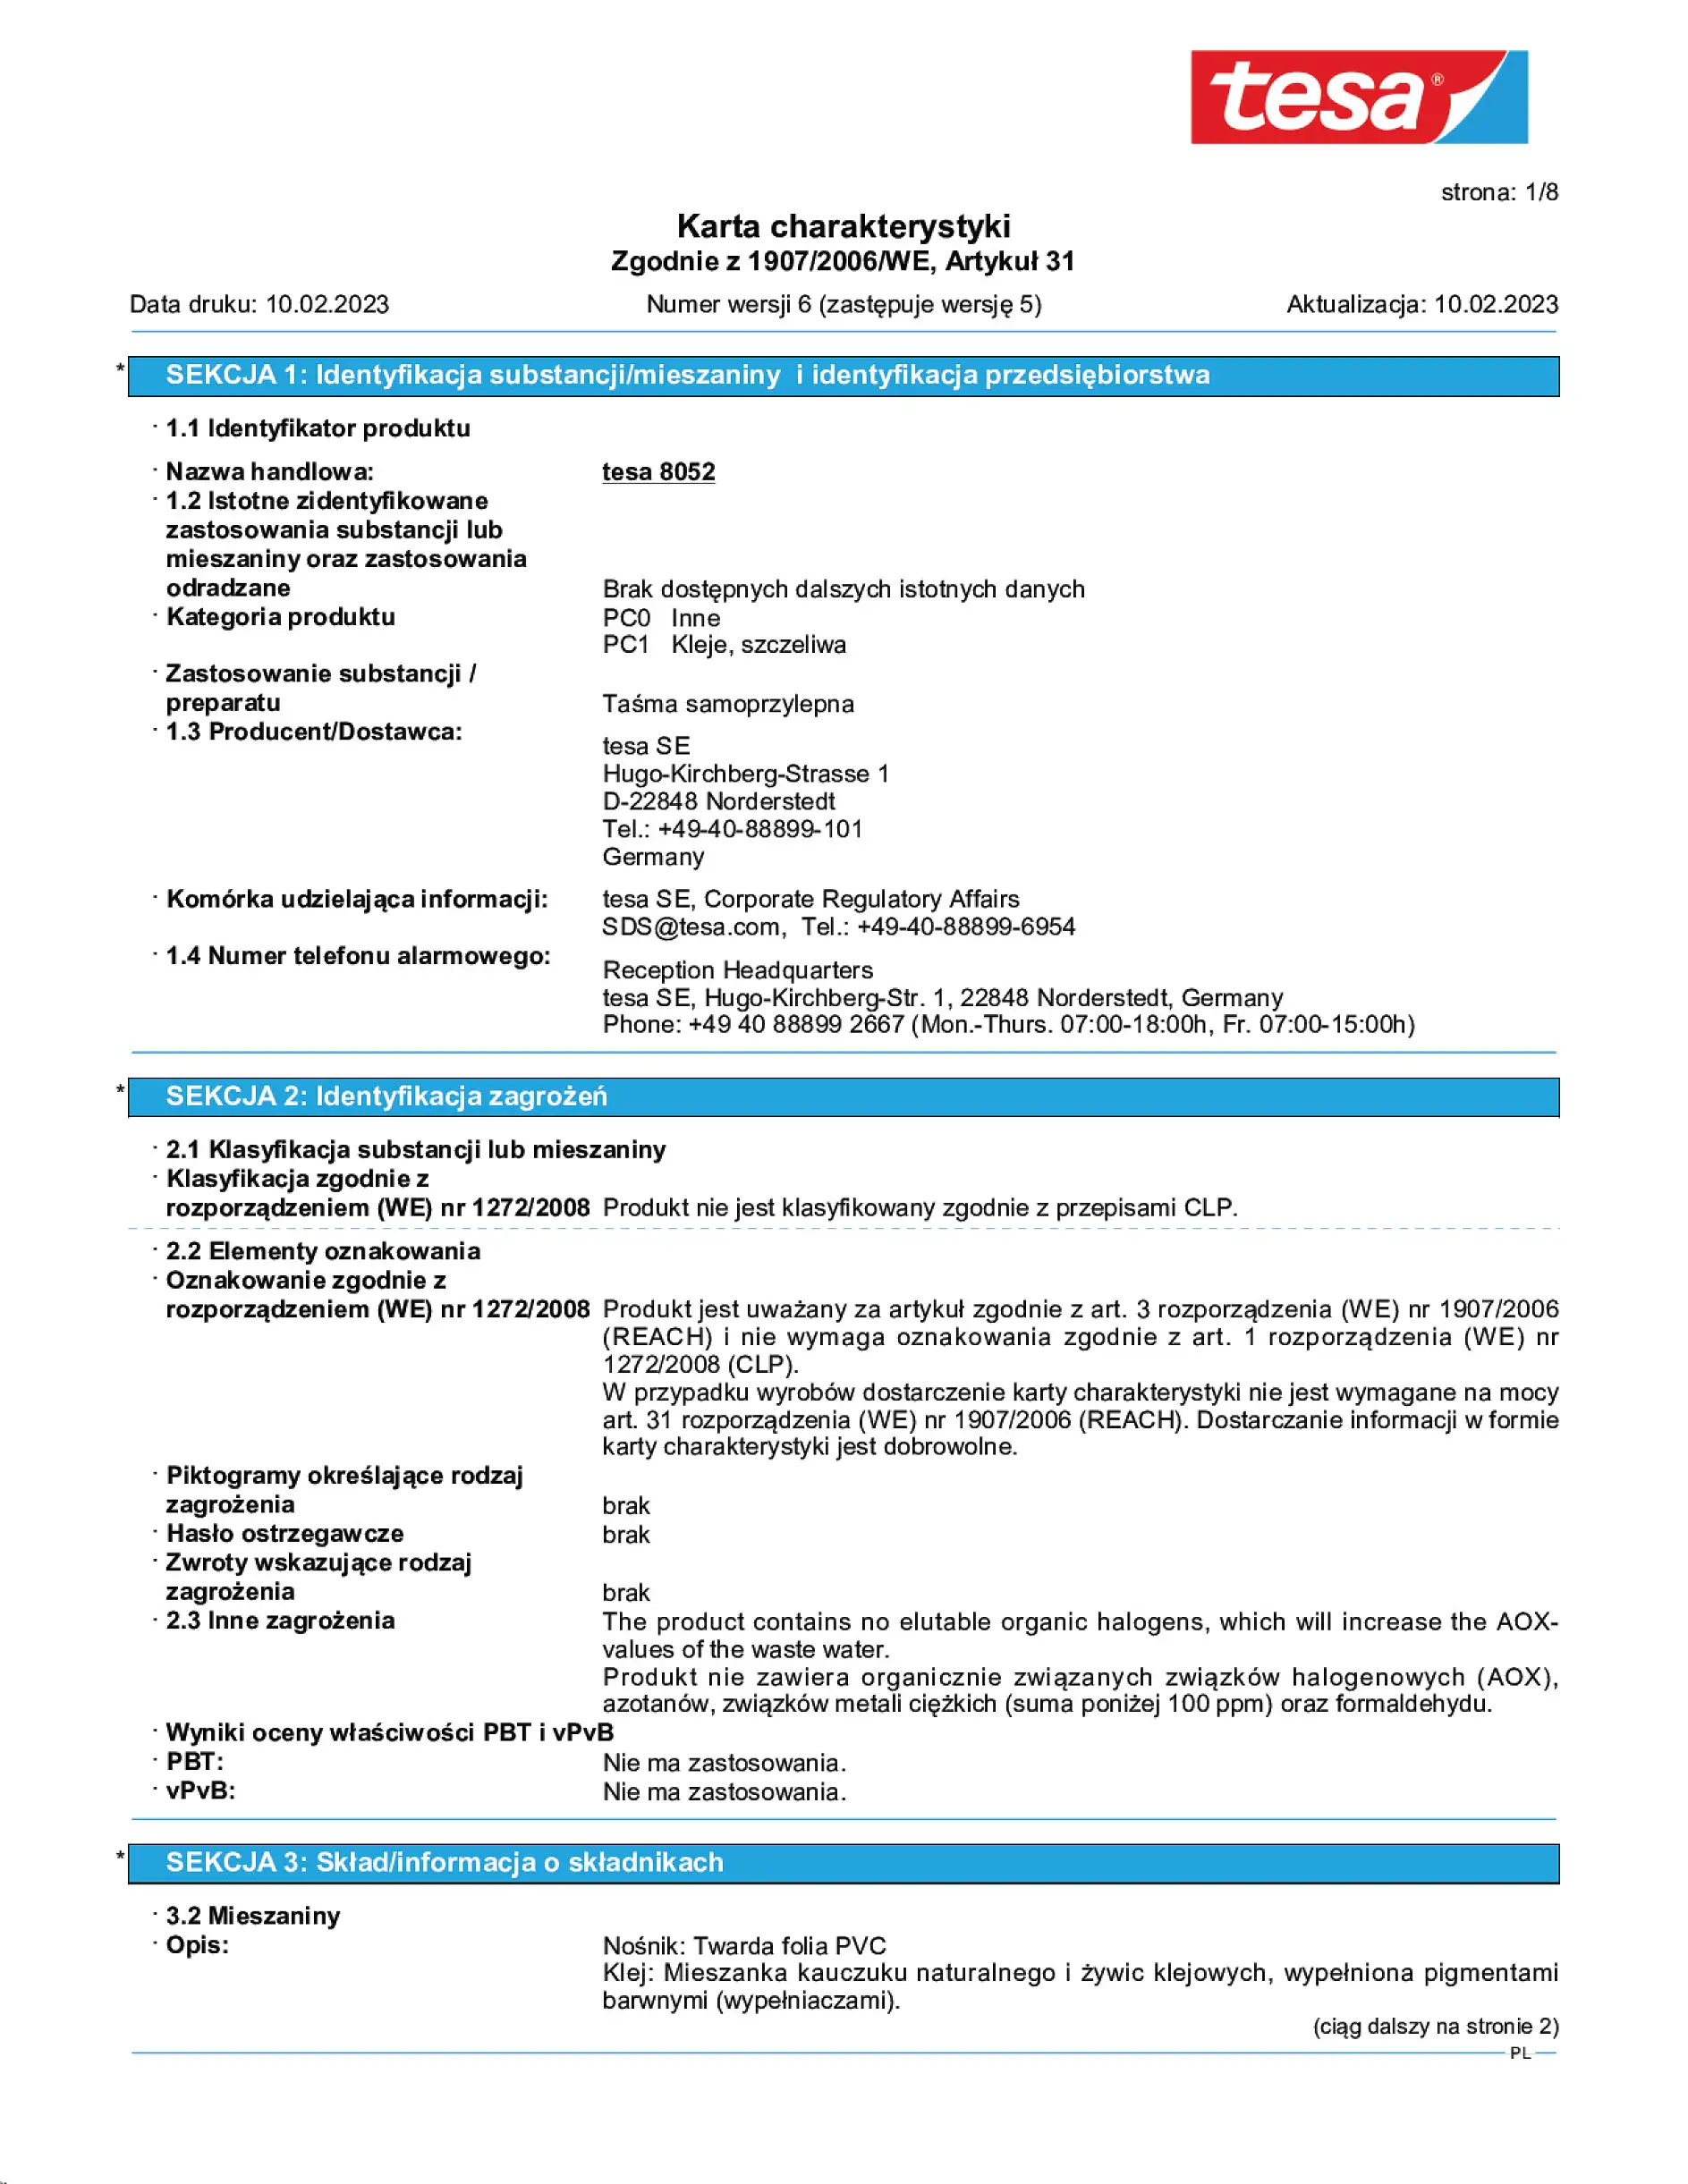 Safety data sheet_tesapack® 57227_pl-PL_v6